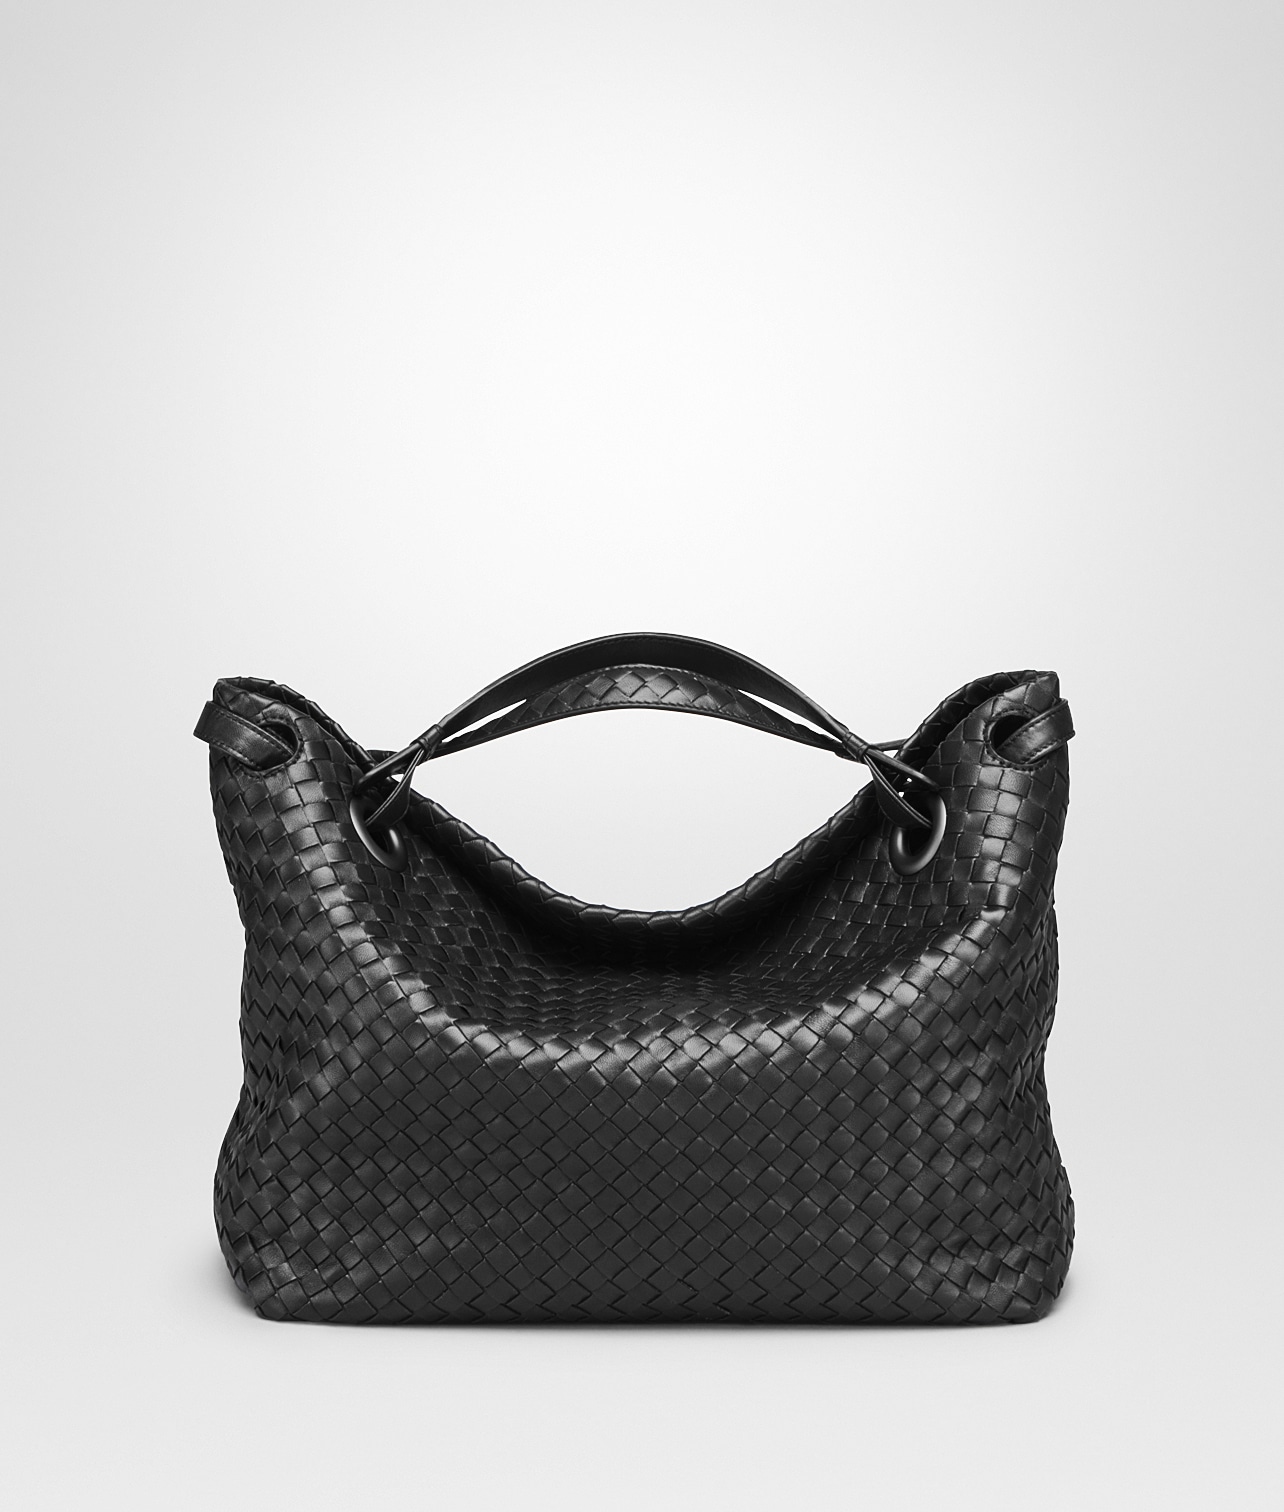 Bella Collection Gorgeous Boutique Handbag | Handbag boutique, Handbag,  Handbag shopping